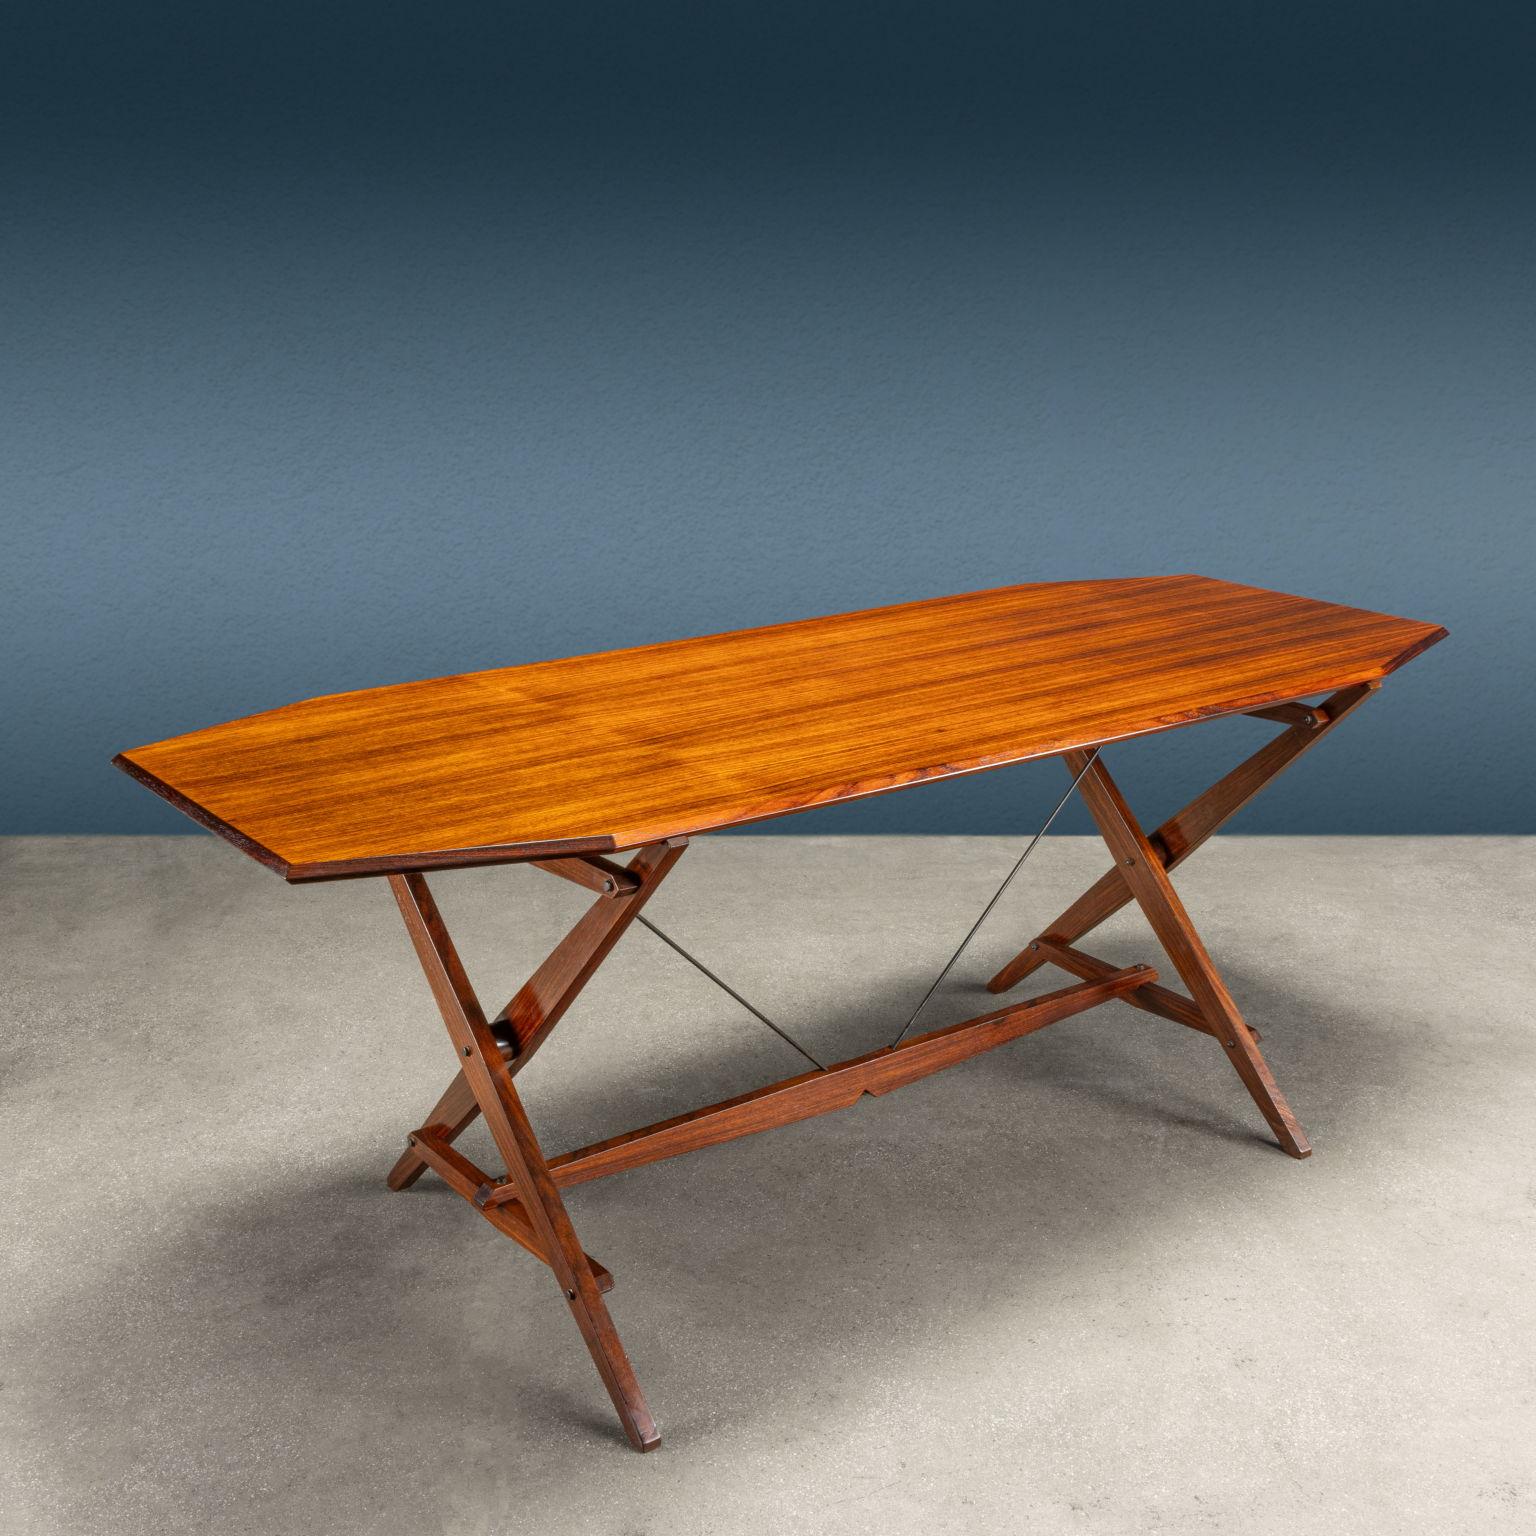 Tavolo a cavalletto modello 'TL2' disegnato da Franco Albini e prodotto da Poggi a partire dagli '50. Segnalato al
Compasso d'oro, questo tavolo ha come caratteristica principale quella sembrare un oggetto provvisorio, smontabile e velocemente